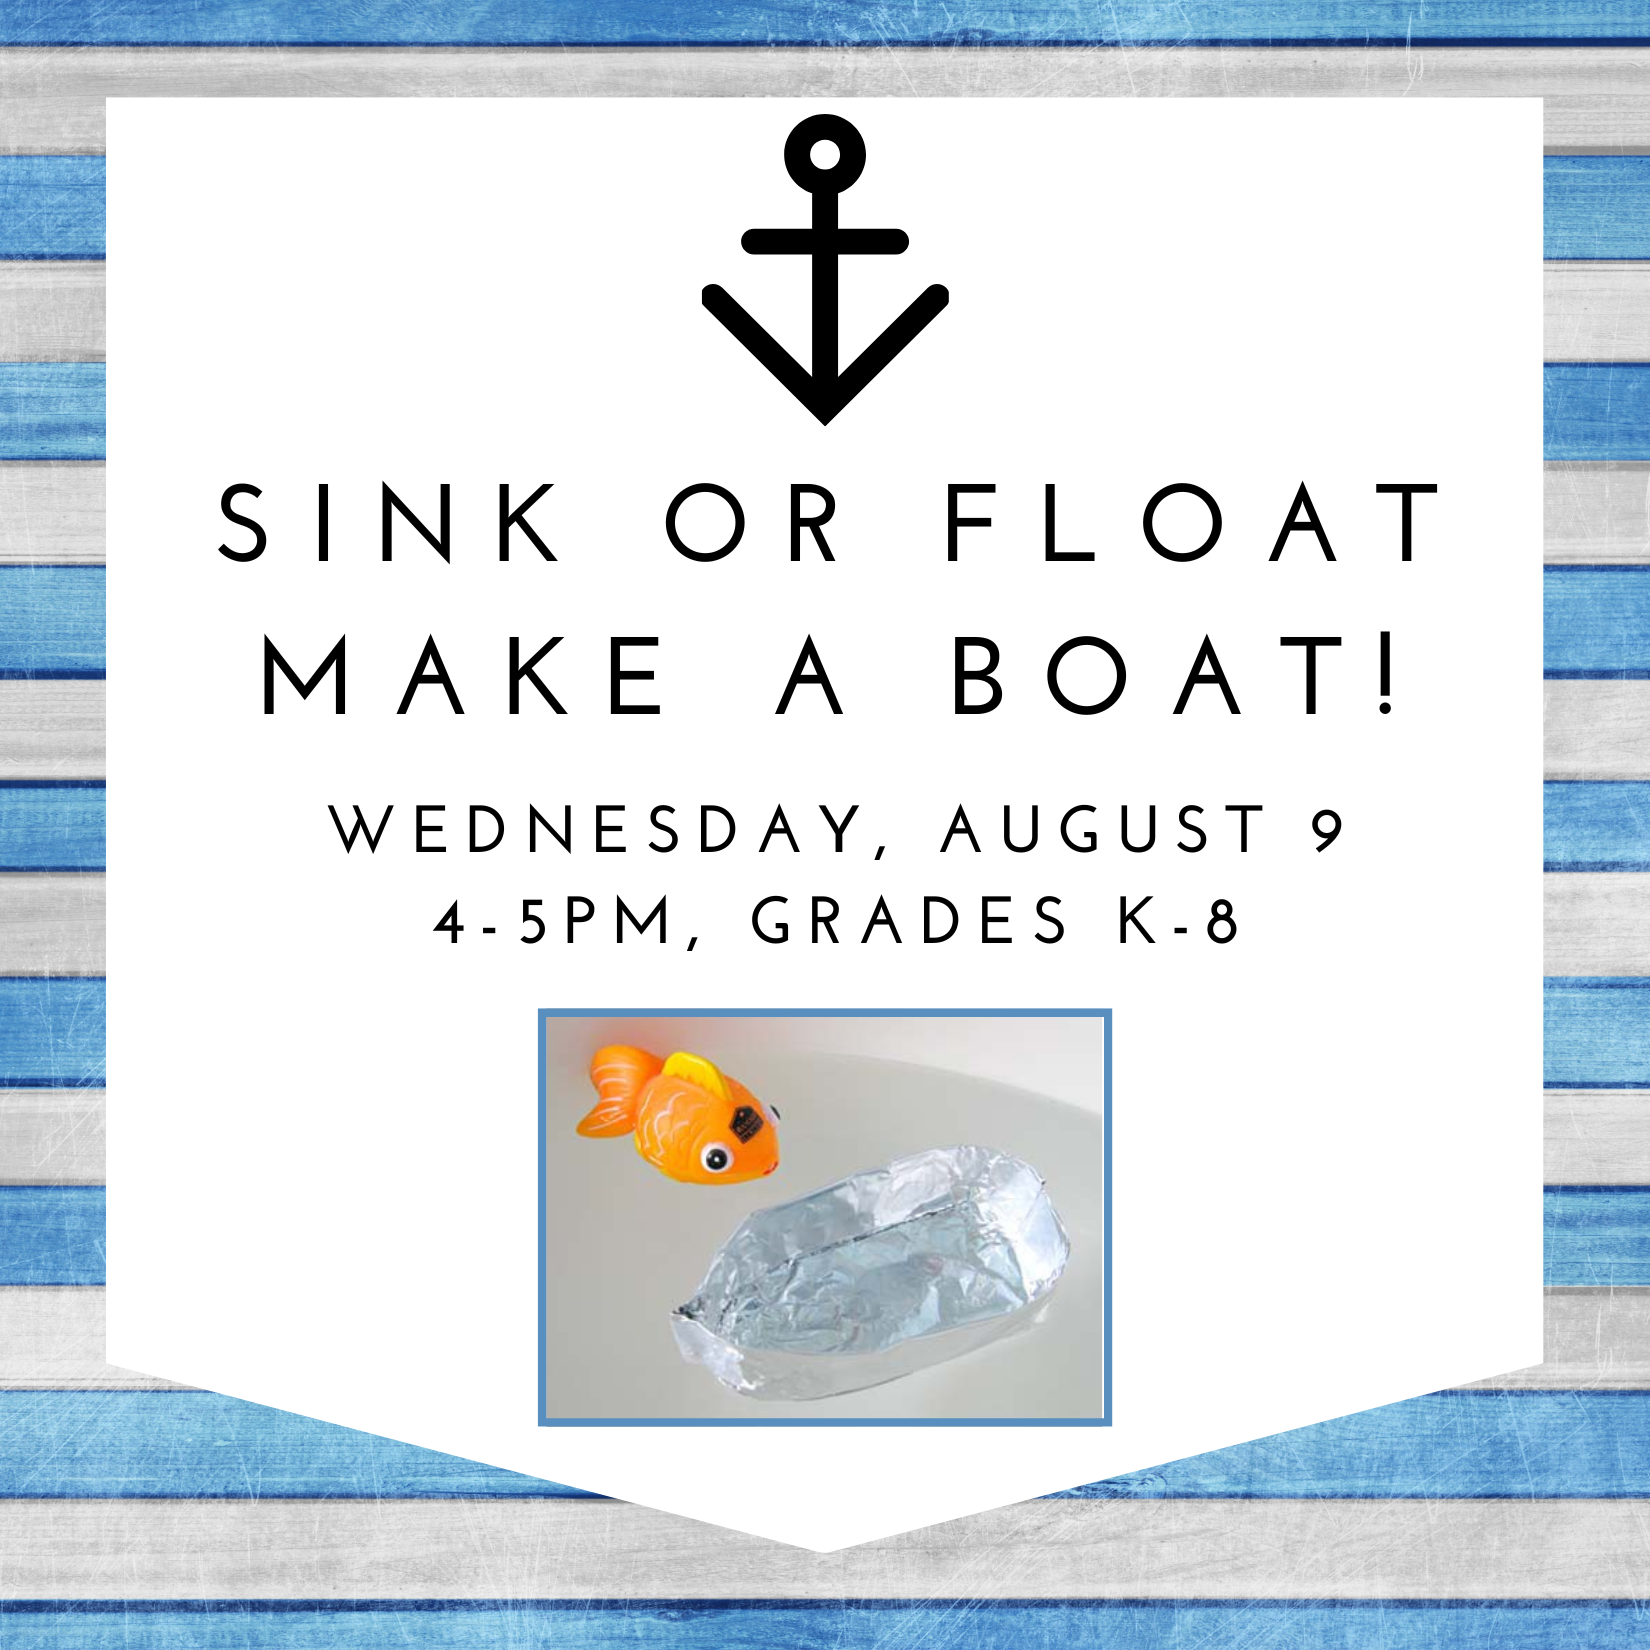 Sink or Float, Make a Boat!